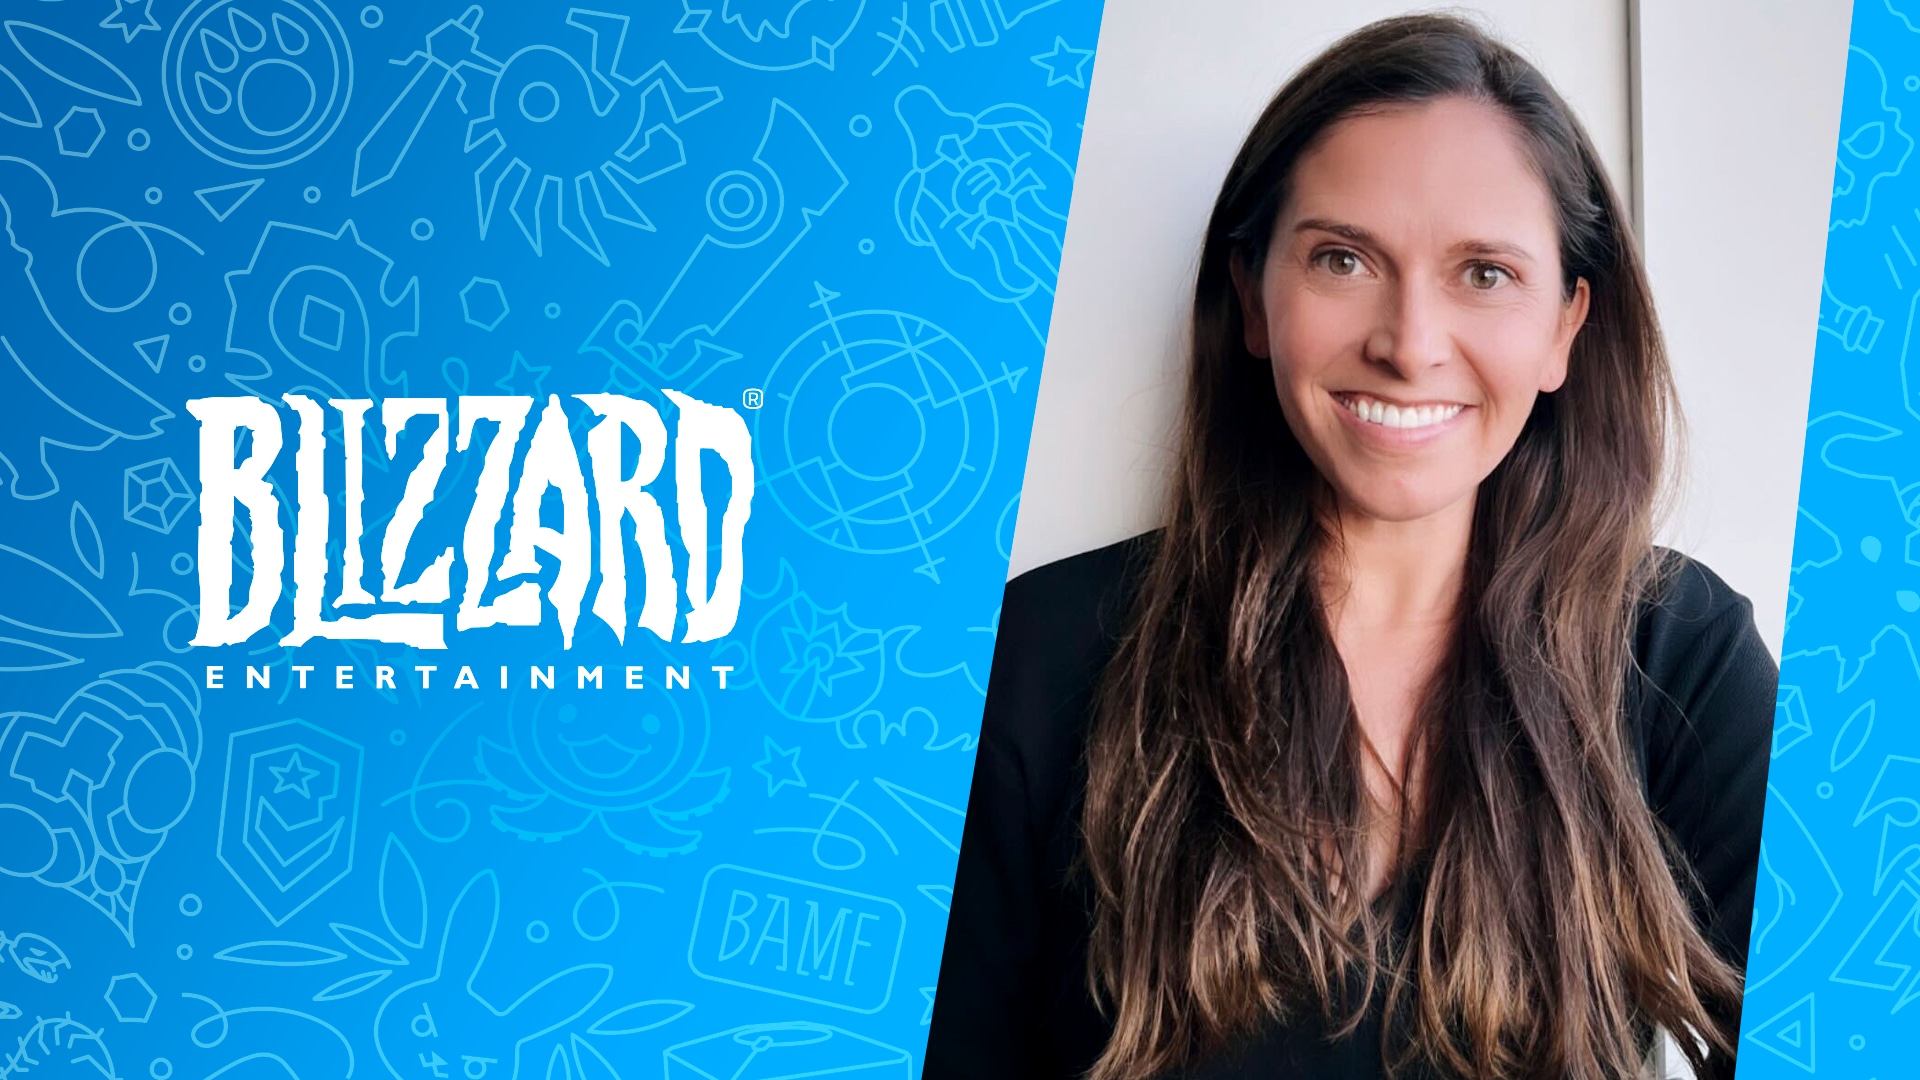 A Blizzard Entertainment dá as boas vindas a Jessica Martinez como vice presidente de cultura